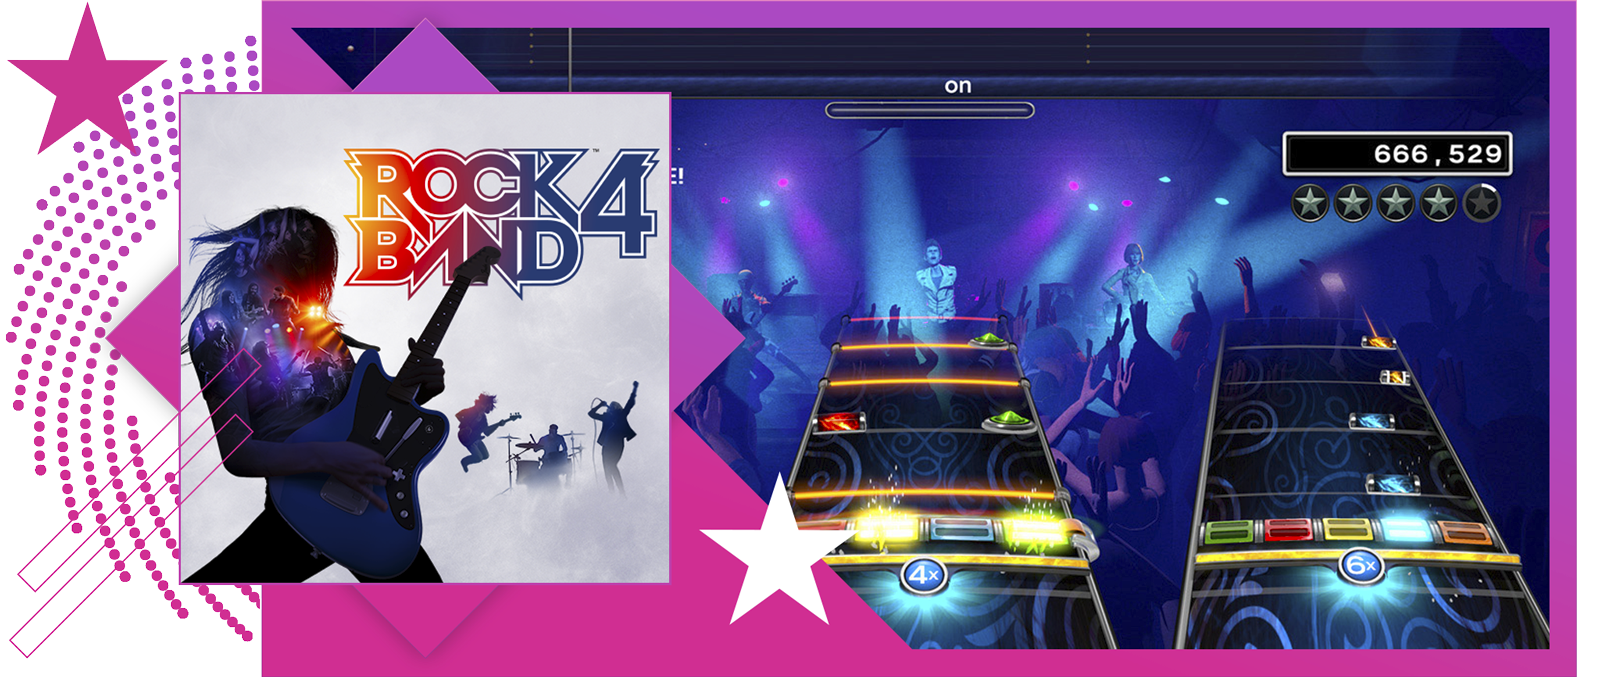 صورة رمزية لأفضل ألعاب الإيقاع الموسيقي تعرض صورة فنية وتجربة لعب من Rock Band 4.